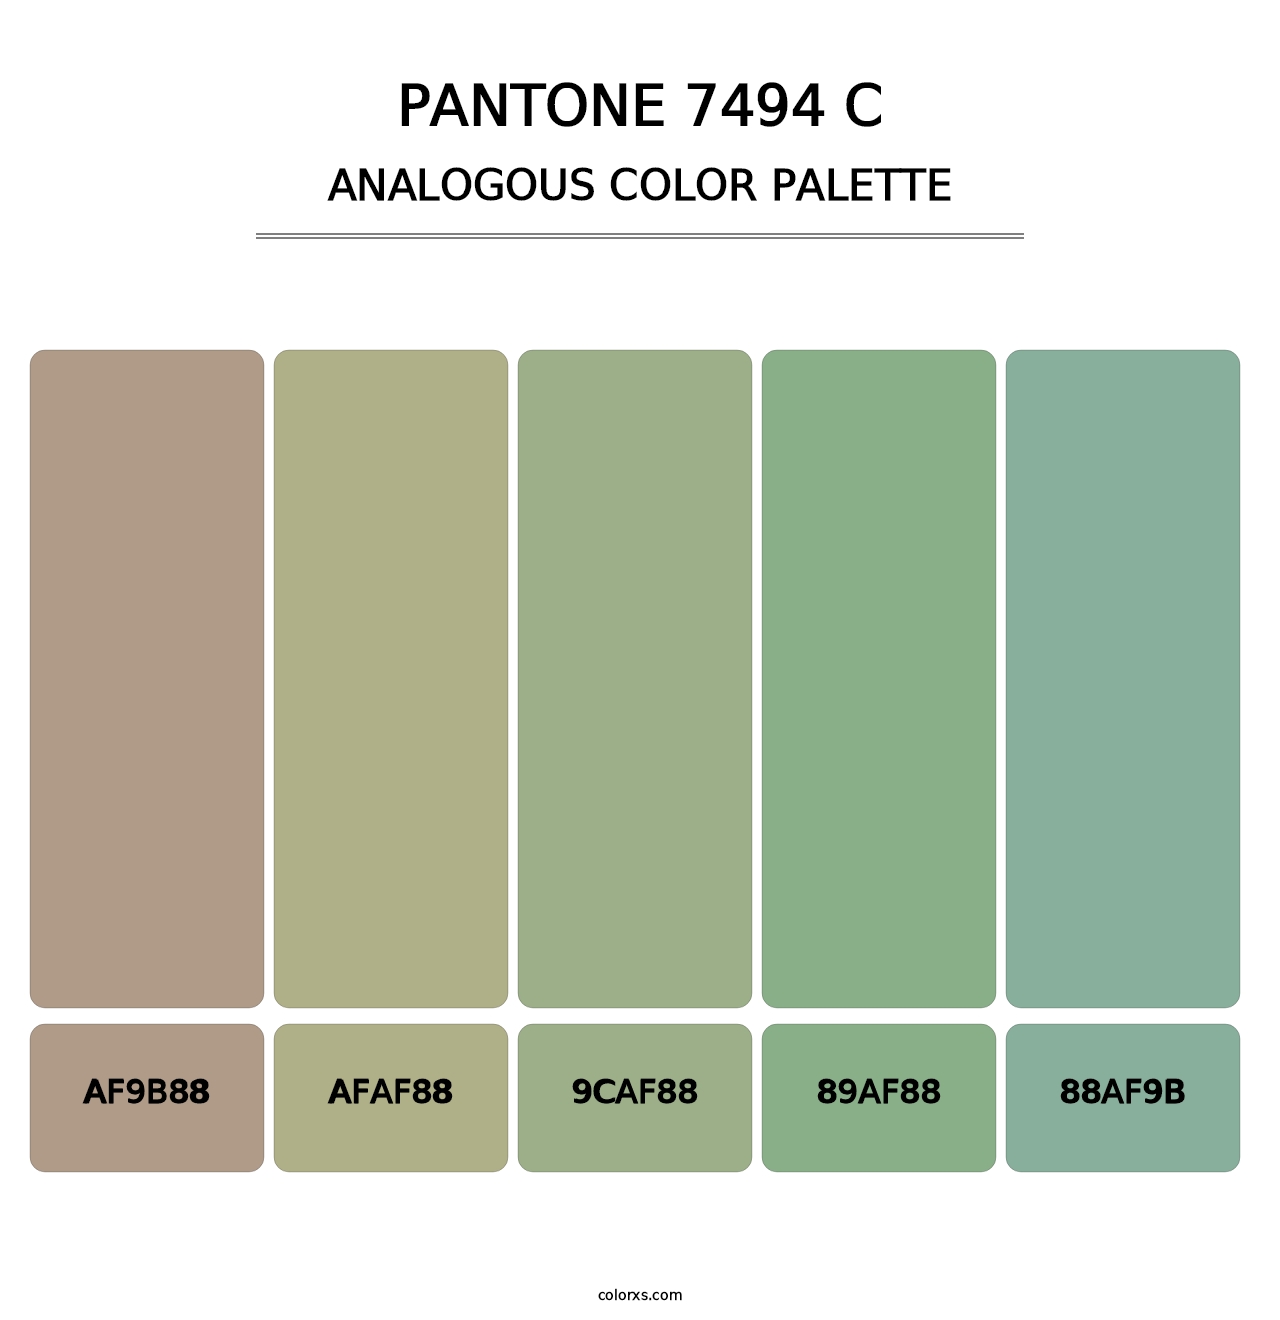 PANTONE 7494 C - Analogous Color Palette